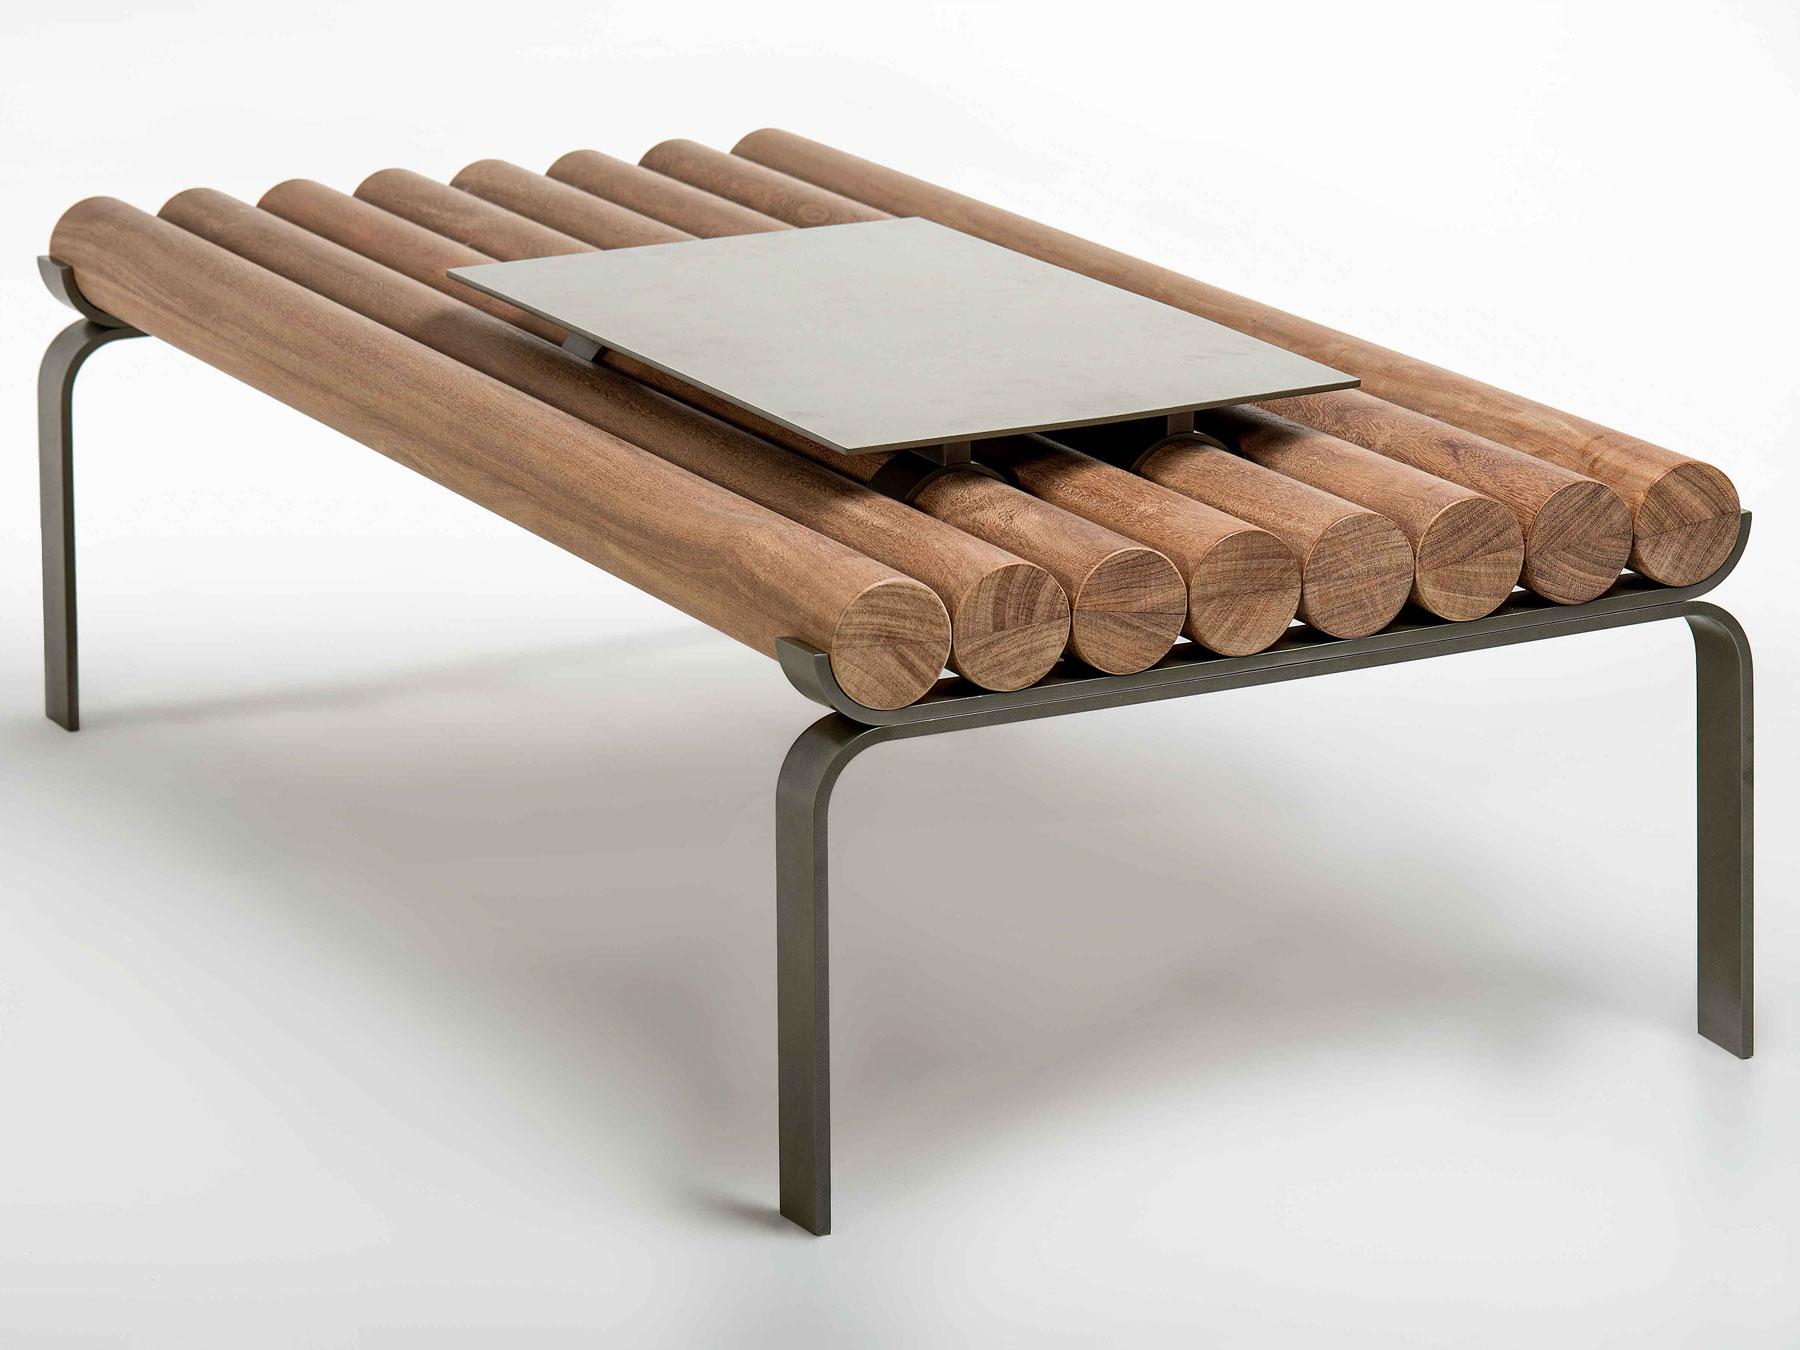 Cette table centrale est fabriquée en acier et en bois massif de Cumaru, un bois dur typique de la partie nord du Brésil. 

Arthur Casas est certainement l'un des architectes brésiliens contemporains les plus en vue. Avec des bureaux à São Paulo